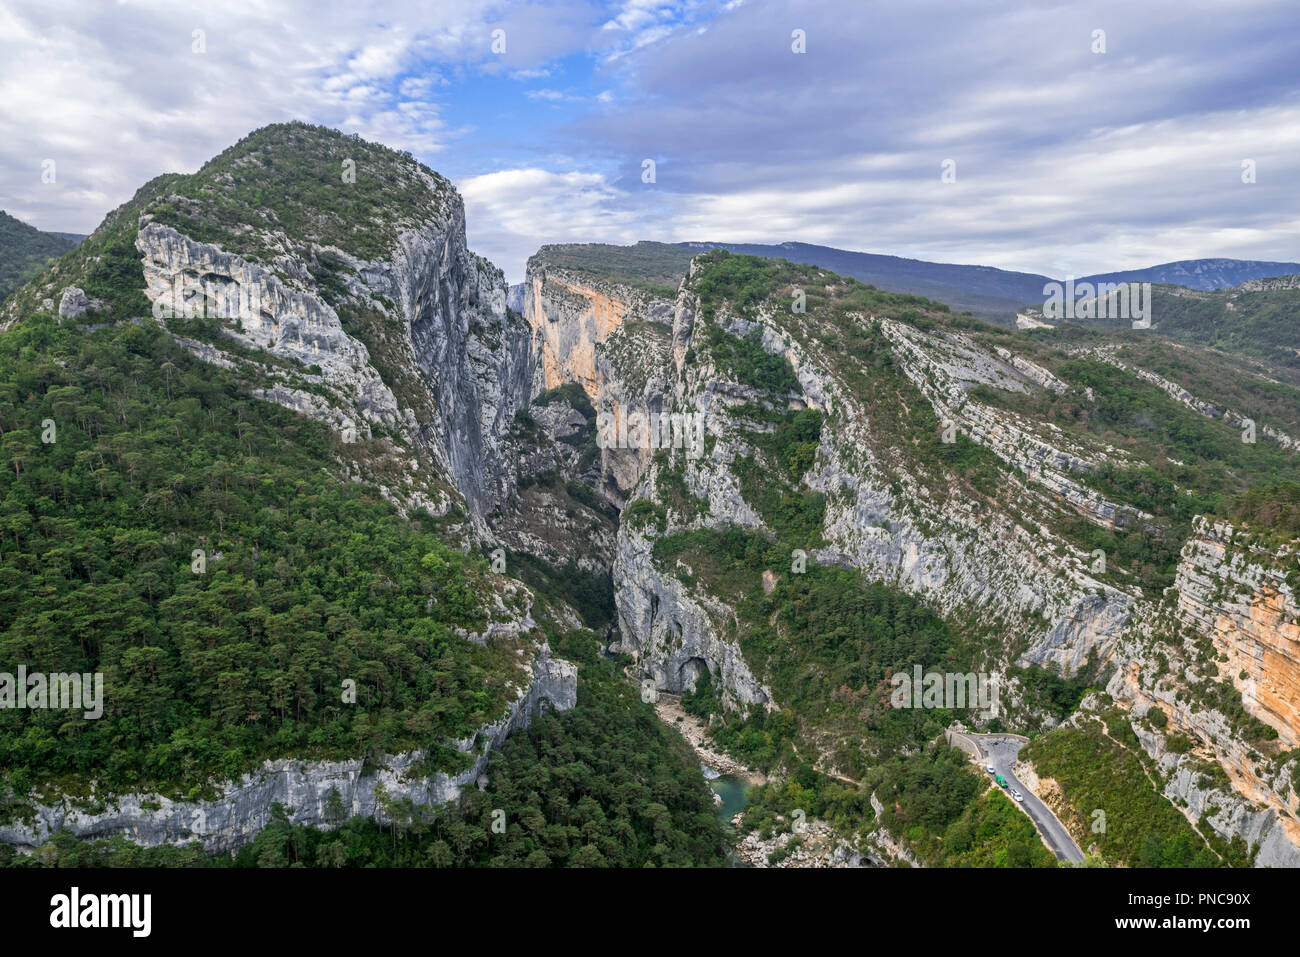 Fluss Verdon am Point Sublime, Beginn des Sentier Martel in den Gorges du Verdon Verdon Schlucht / Canyon, Provence-Alpes-Côte d'Azur, Frankreich Stockfoto